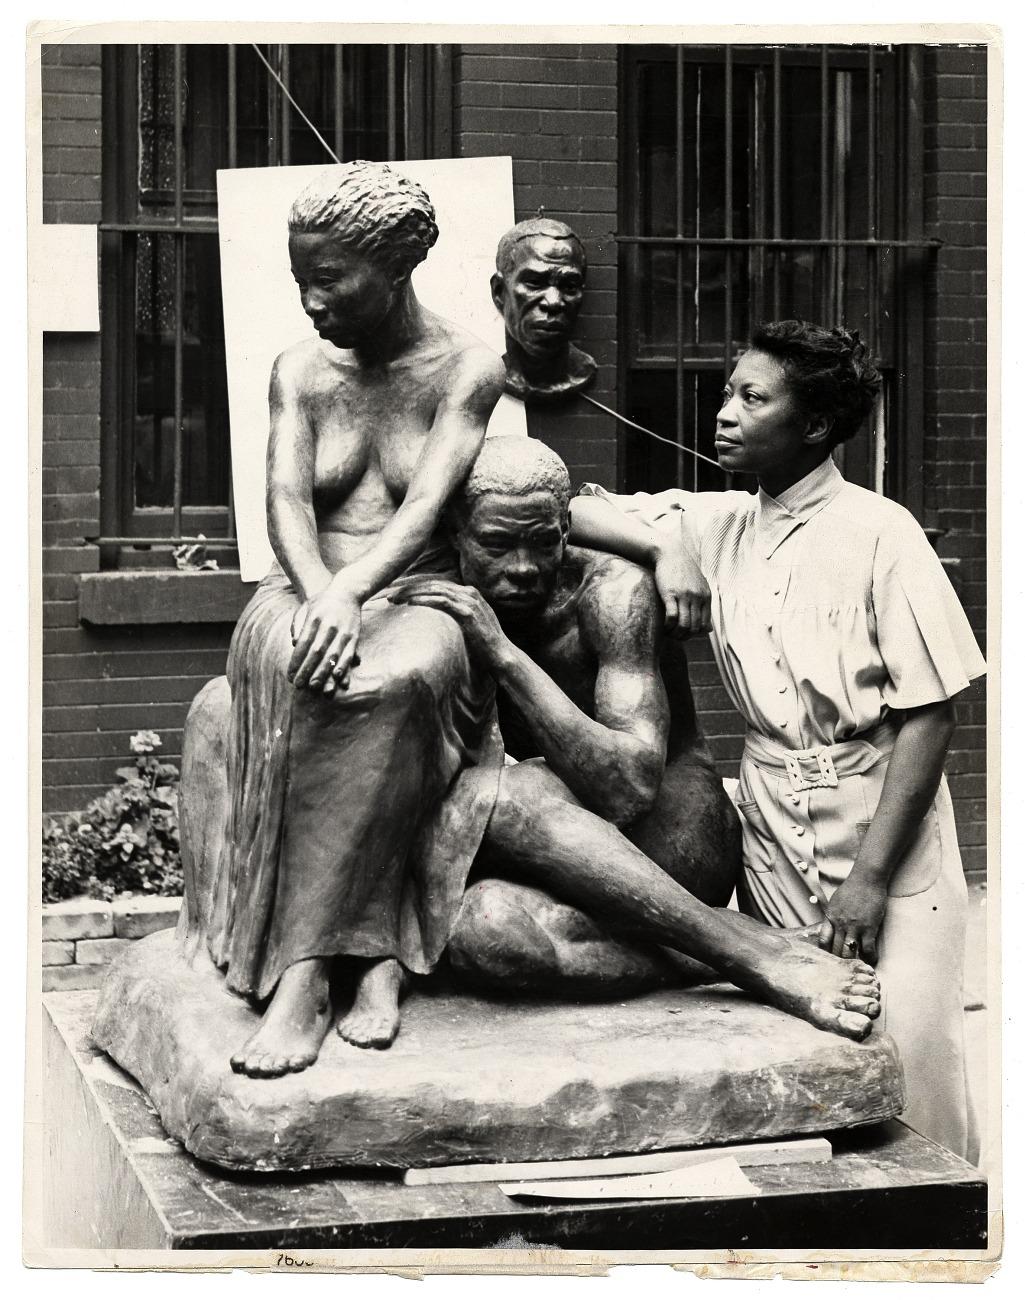 Artist Augusta Savage with her sculpture